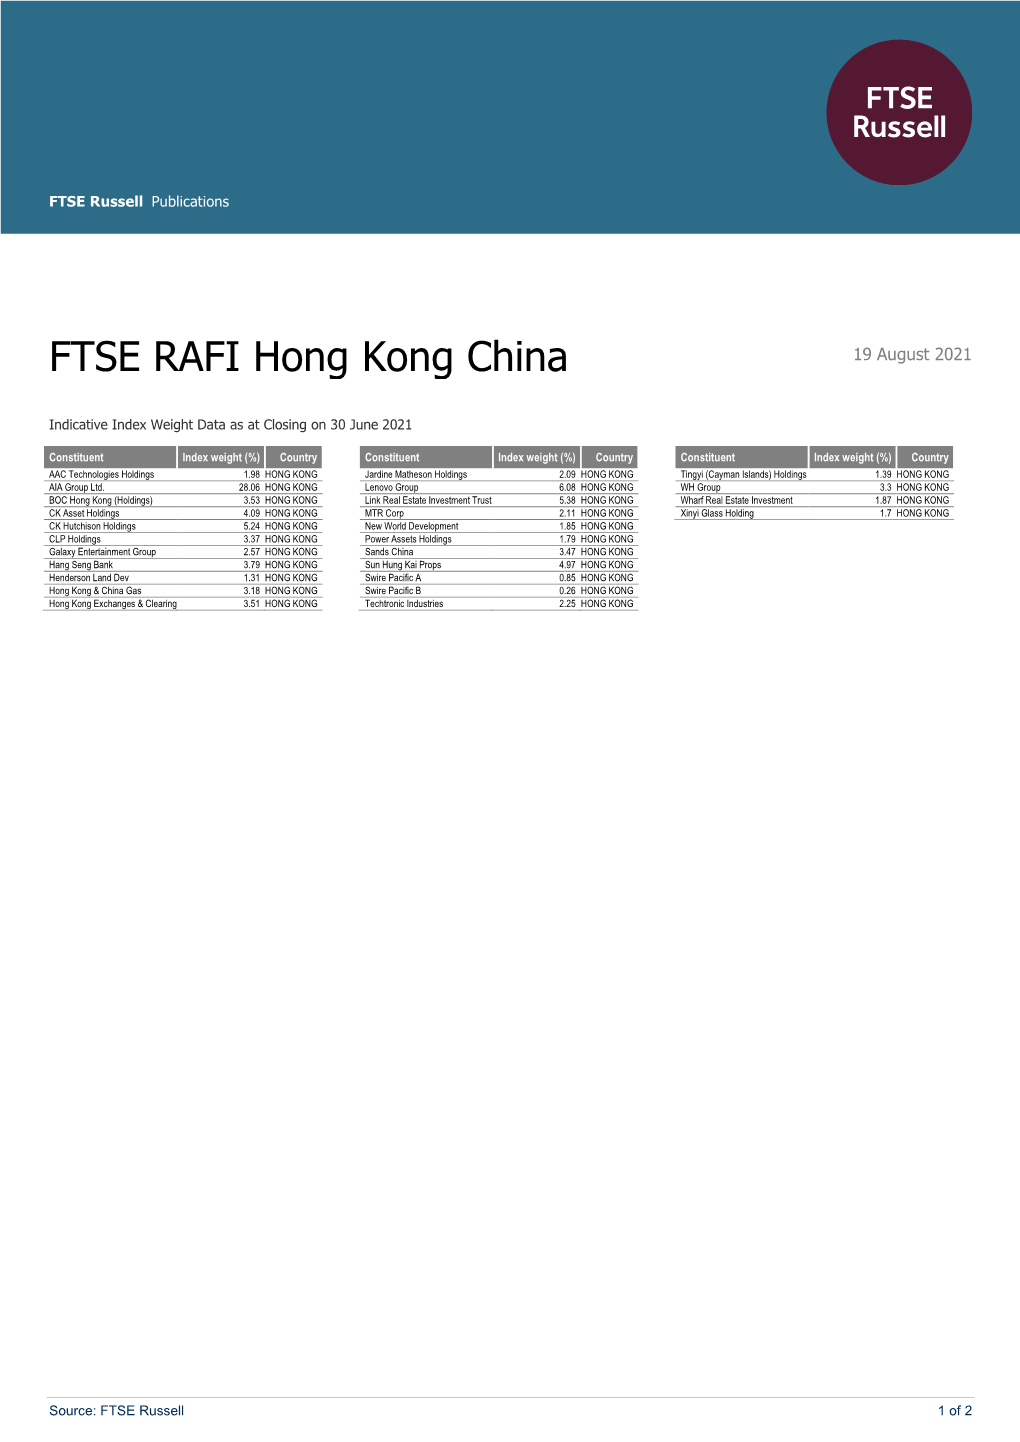 FTSE RAFI Hong Kong China